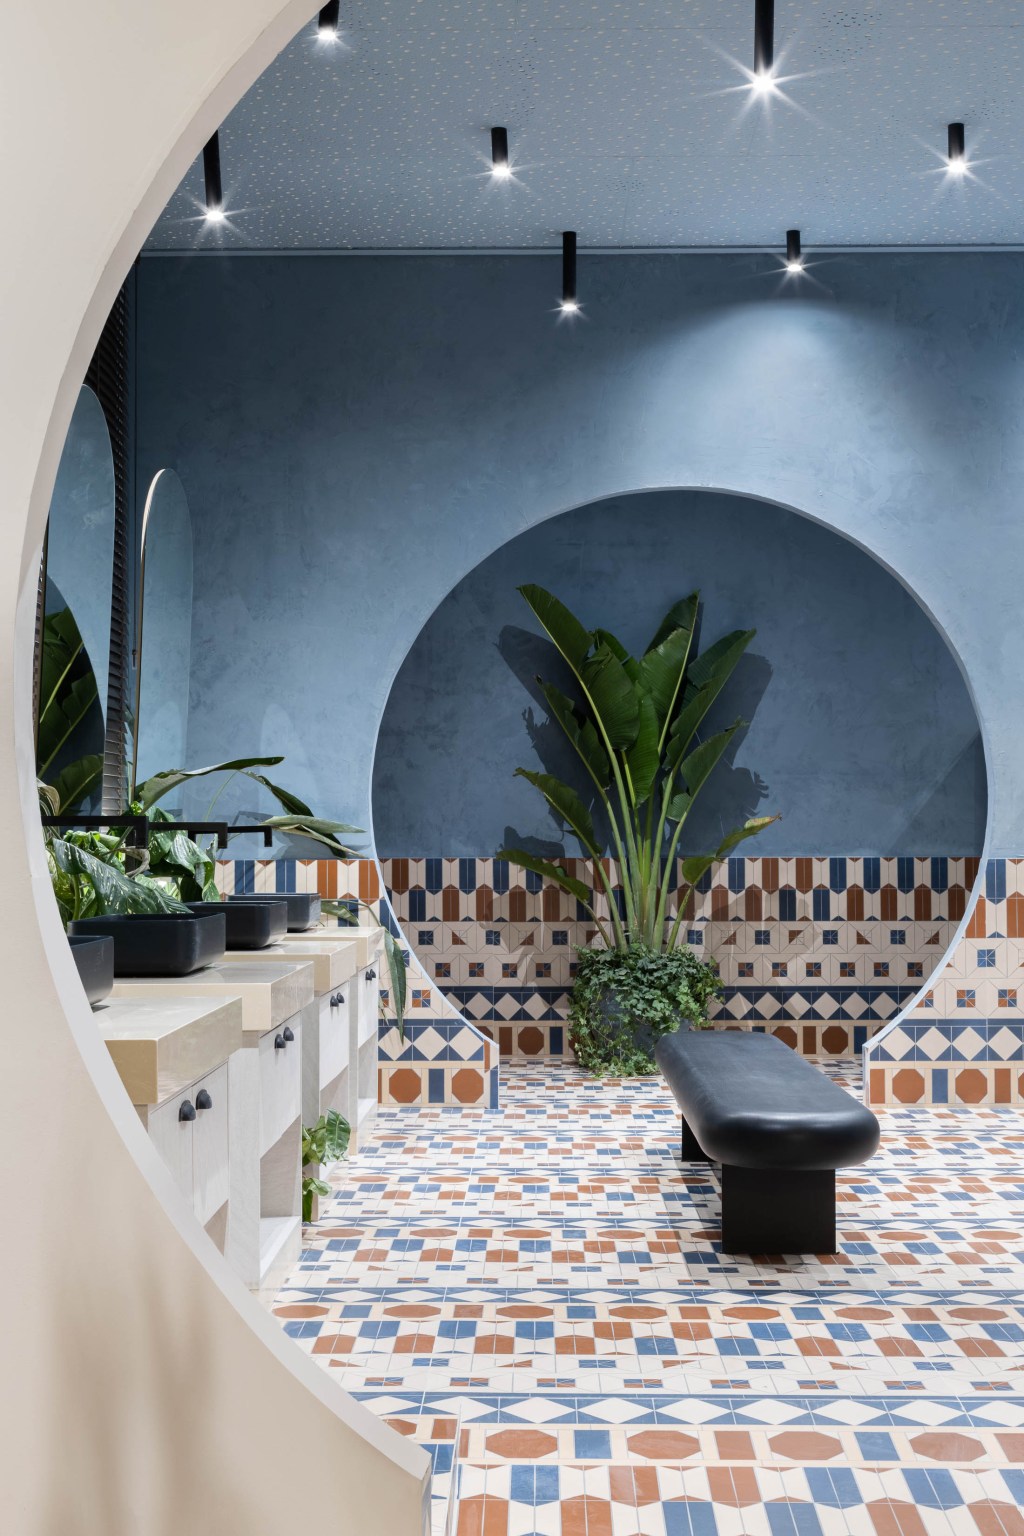 Hellen Pacheco Arquitetura e Design - Mediterrâneo em Mim. Projeto da CASACOR São Paulo 2023. Na foto, banheiro com piso cerâmico estampado e aberturas circulares na parede.